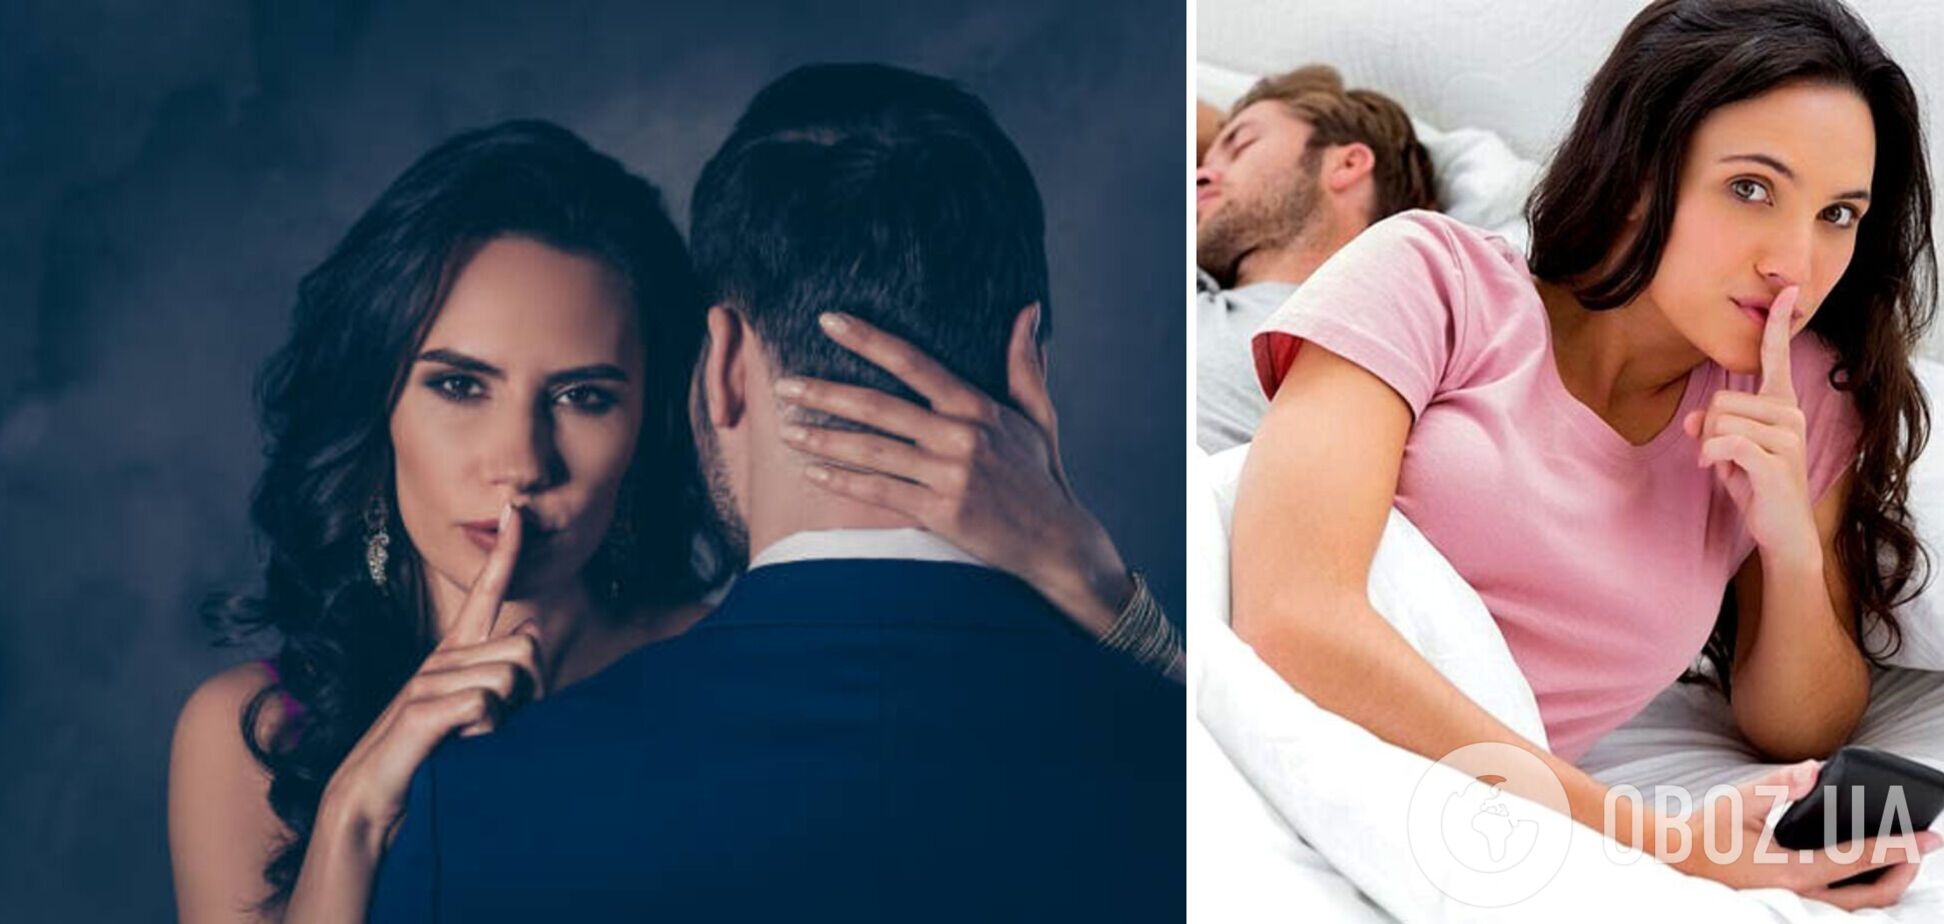 6 ознак того, що жінка тобі зраджує